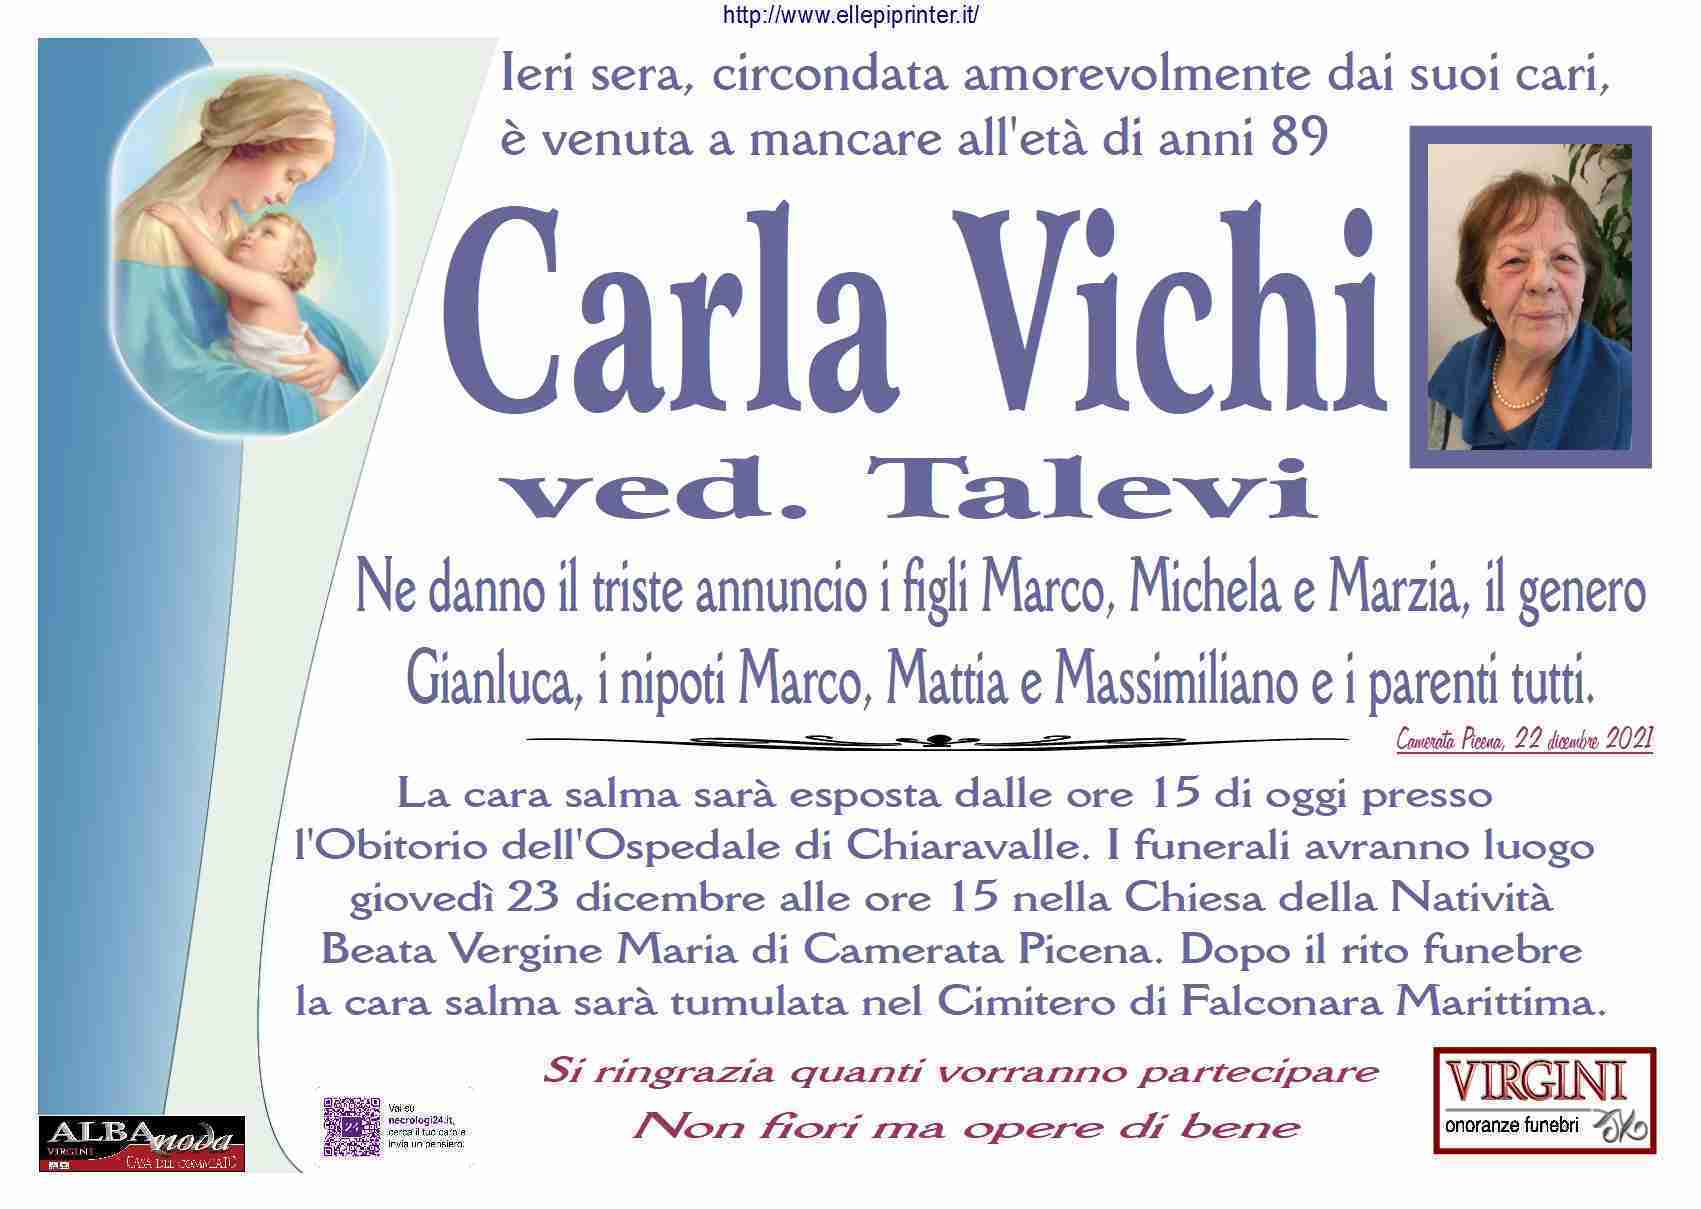 Carla Vichi